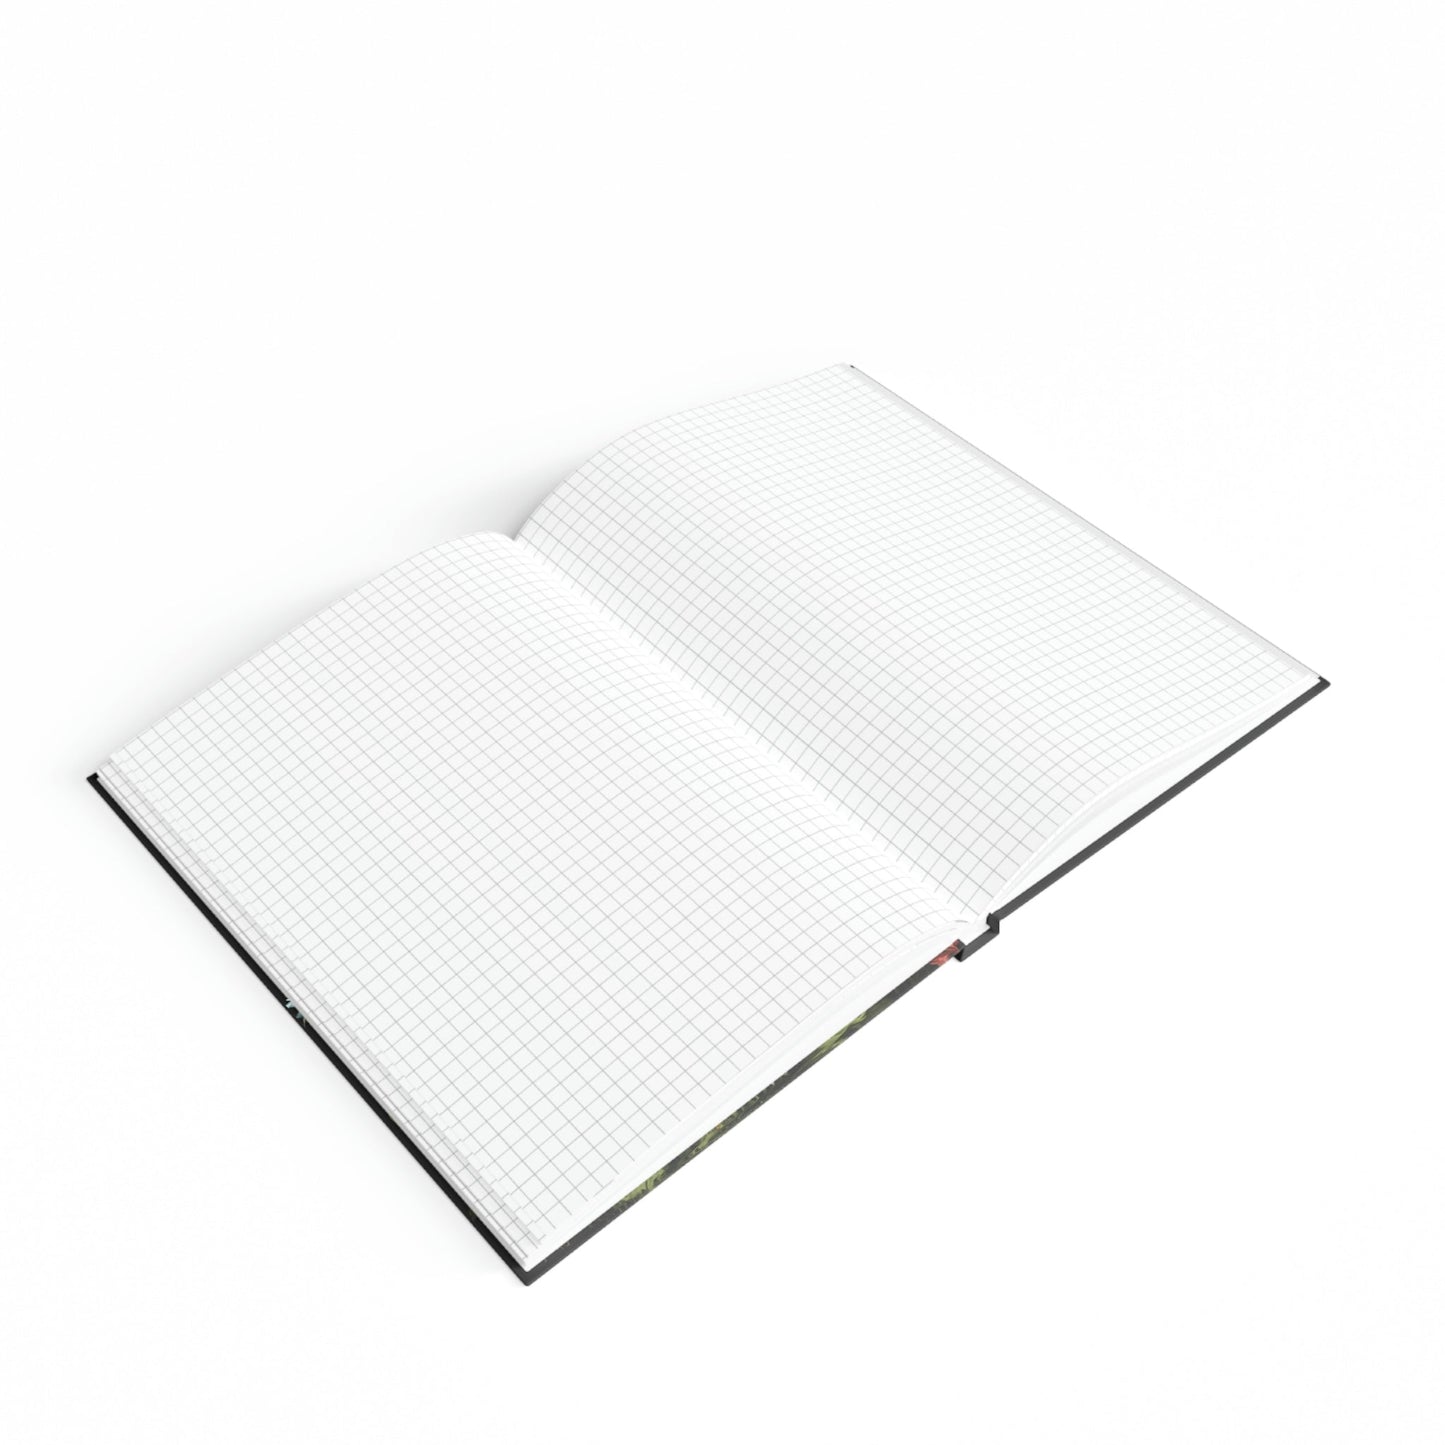 Biewer Terrier Notebook - Garden Portrait - Biewer Terrier Inspirations - Hard Backed Journal